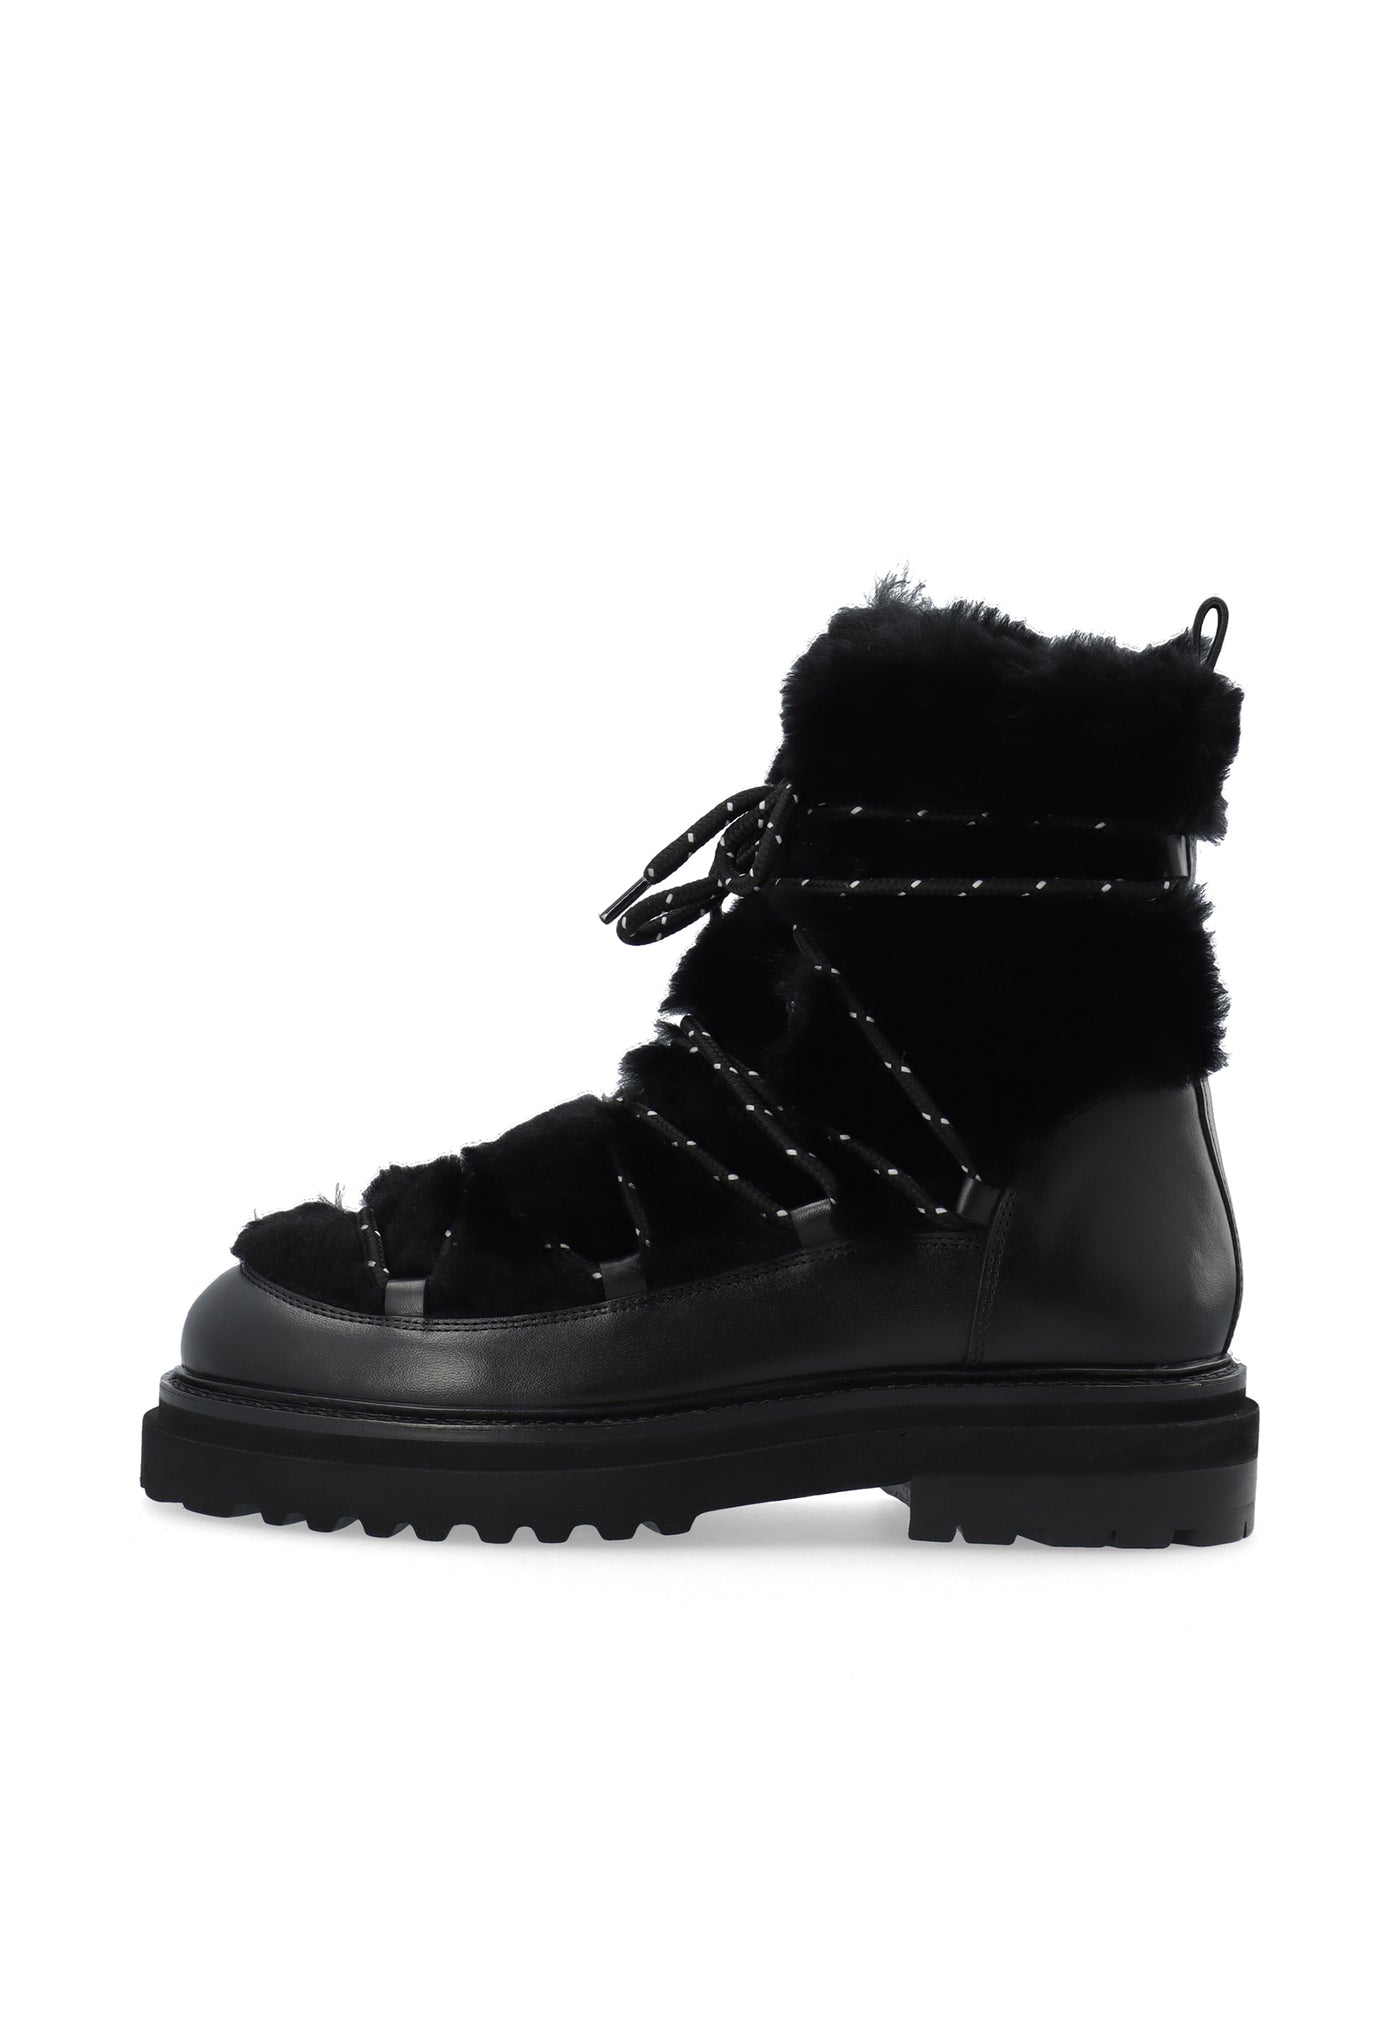 LÄST Sandra Snowboot - Leather/PES - Black Ankle Boots Black